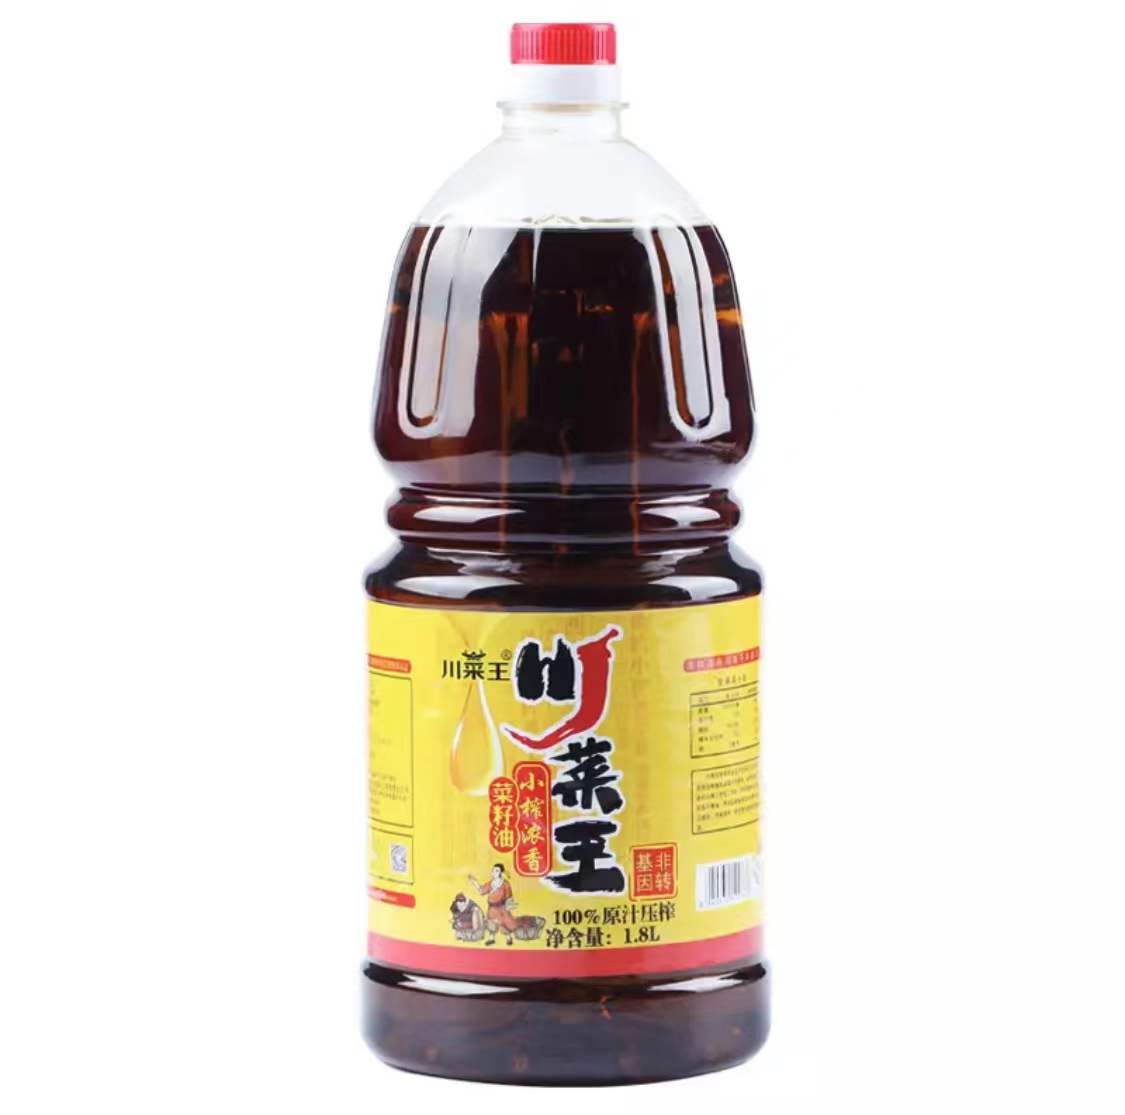 川菜王小榨濃香菜籽油 1.8L